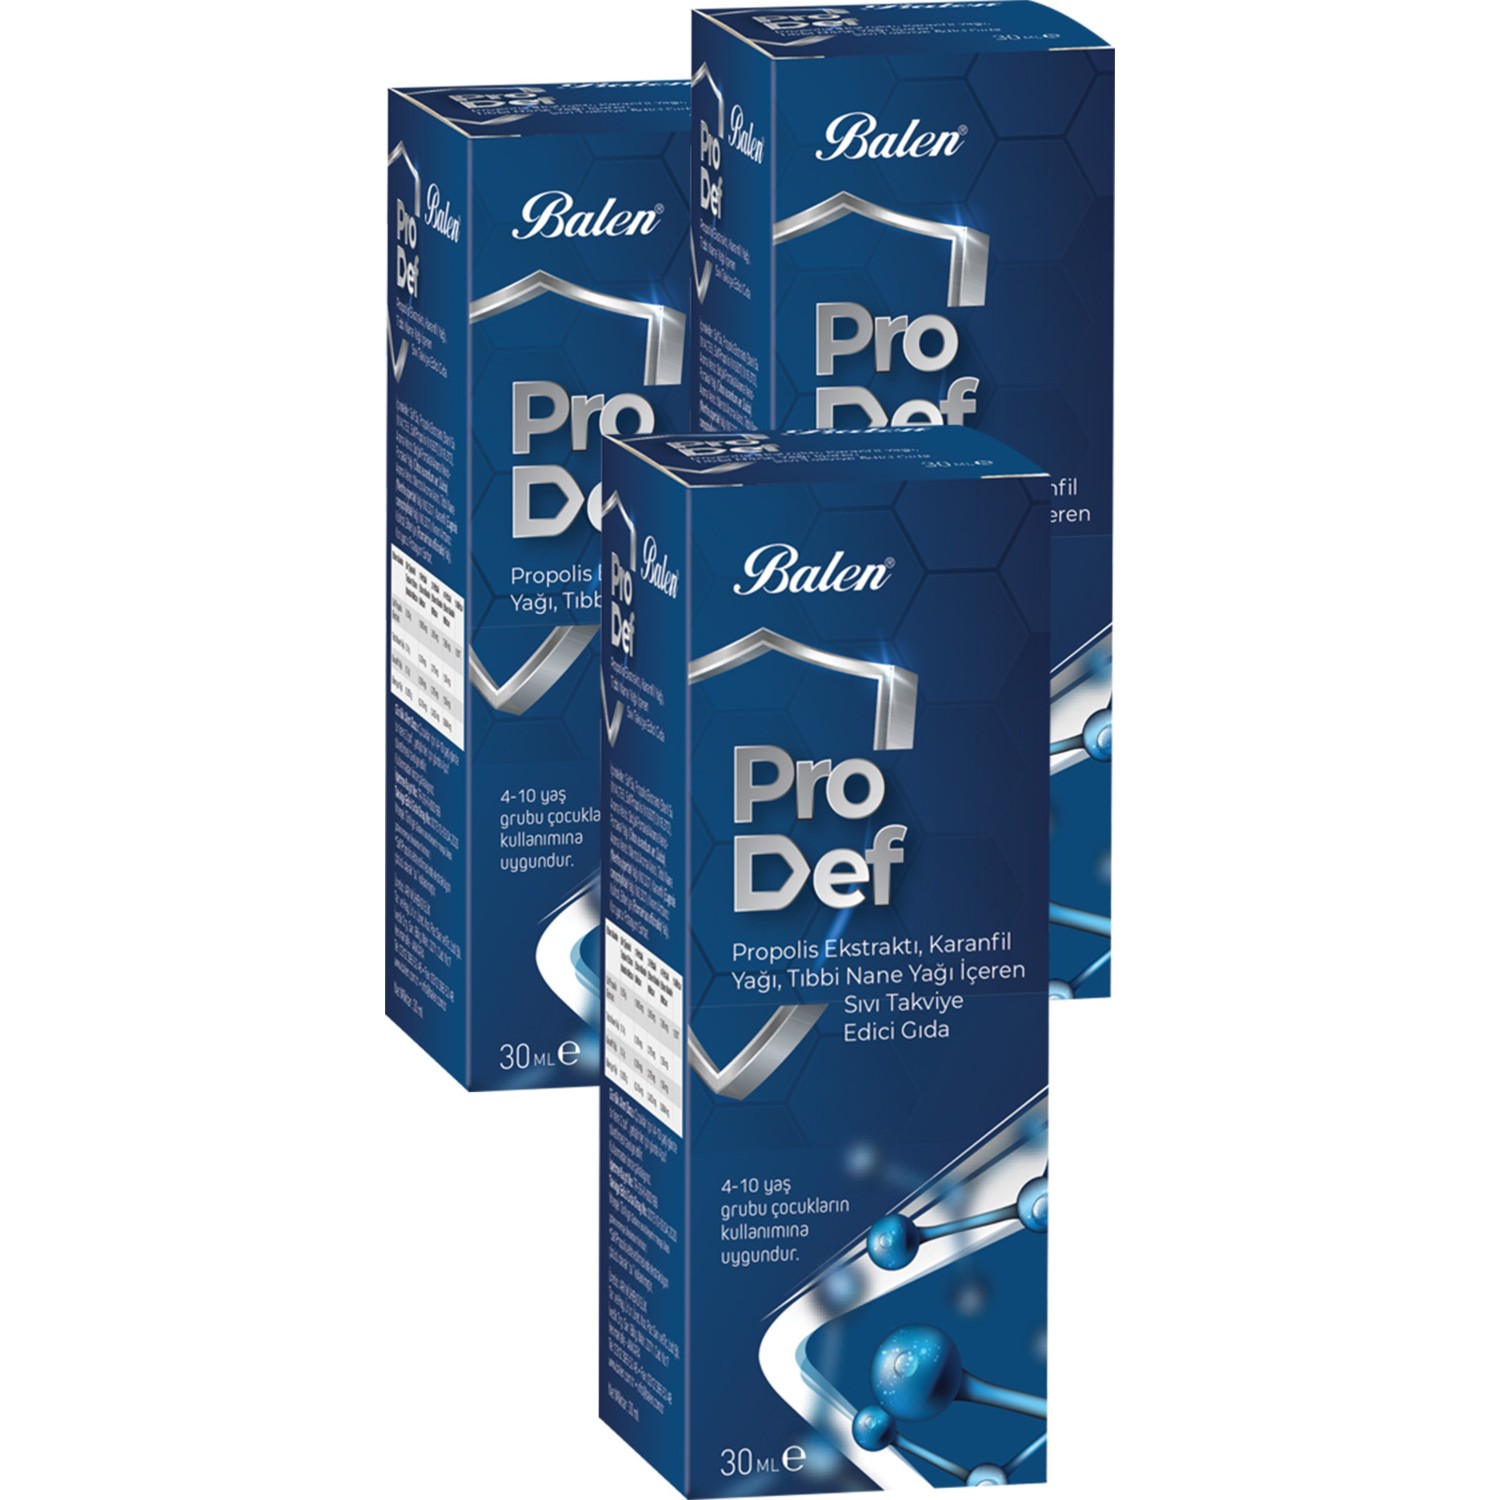 Спрей для горла с экстрактом прополиса Balen Pro Def Spray Supplement, 3 упаковки по 30 мл